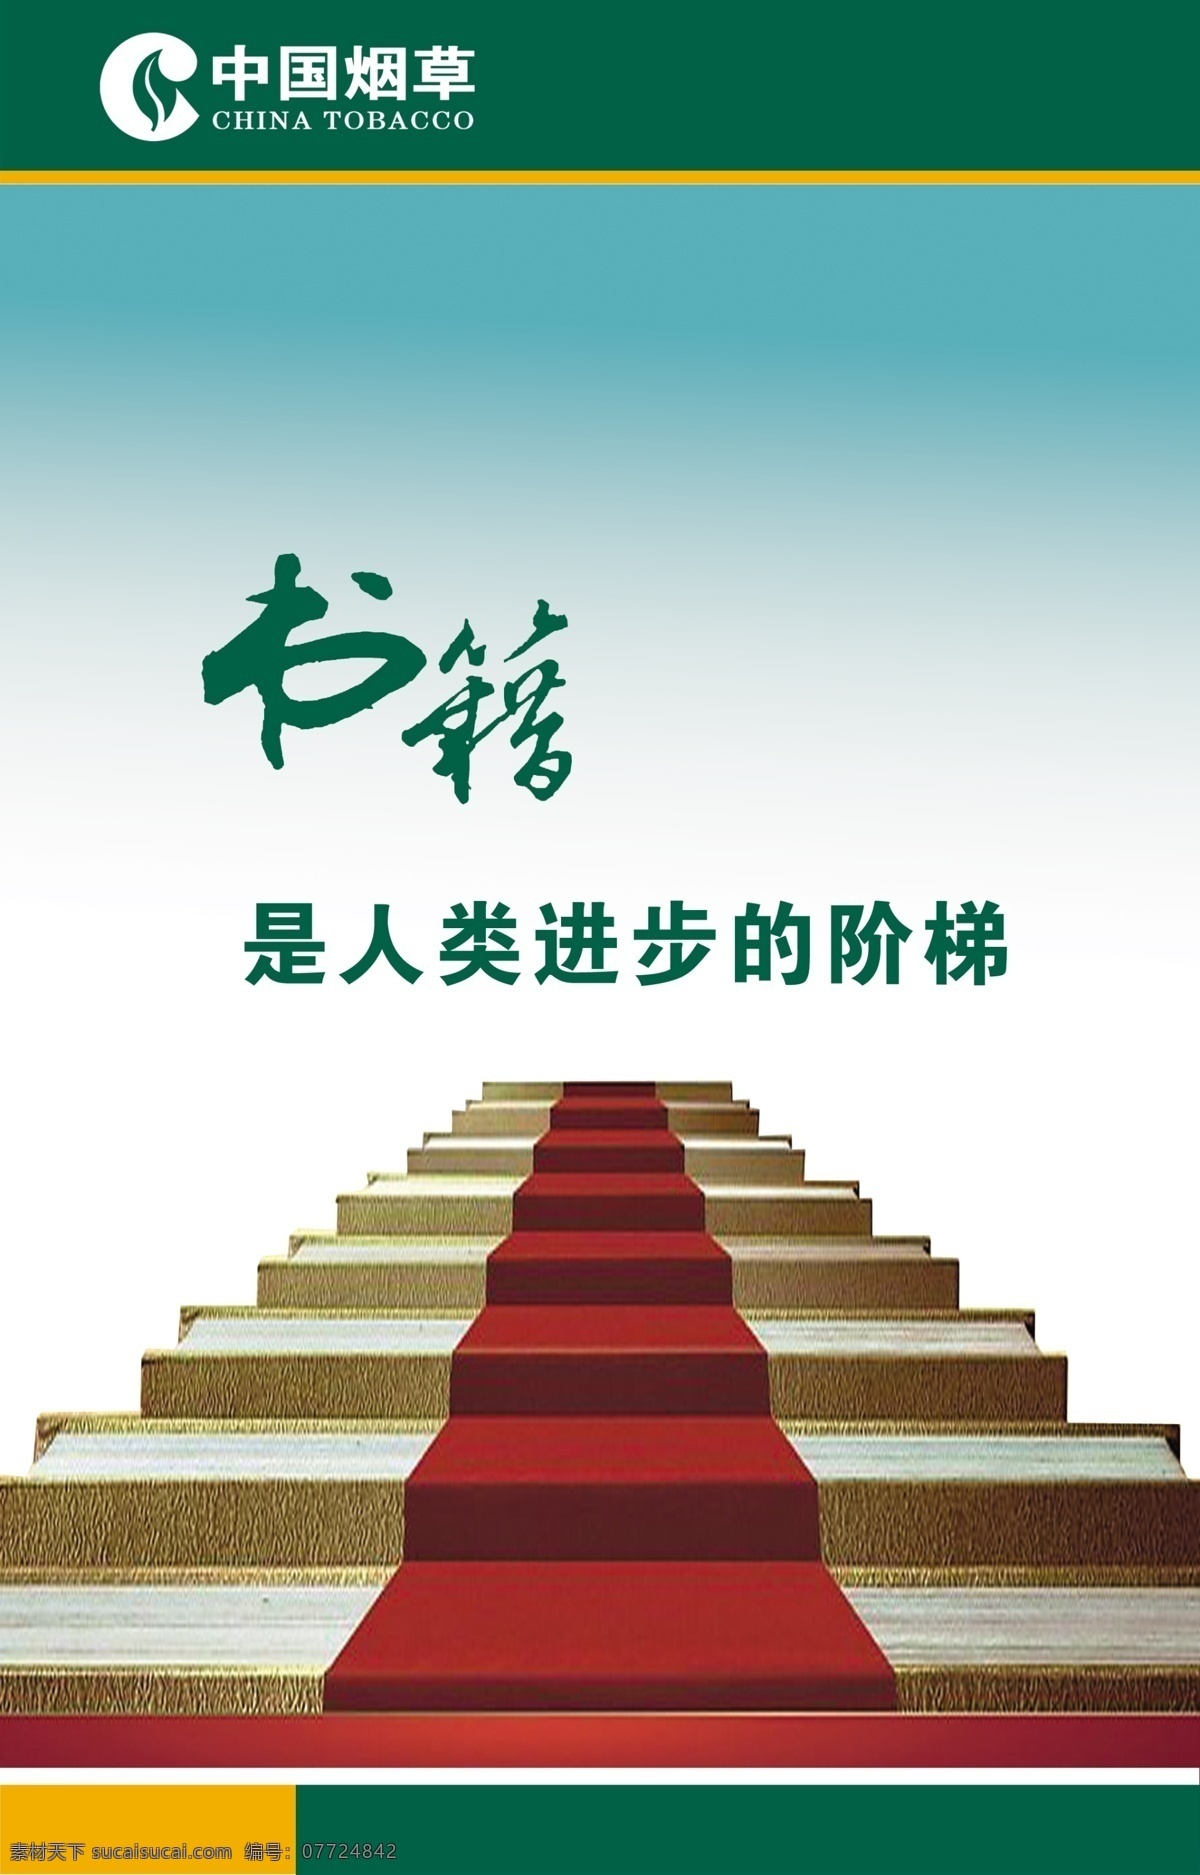 书籍 烟草 人类 进步 阶梯 台阶 图 景 中国烟草标志 展板模板 广告设计模板 源文件